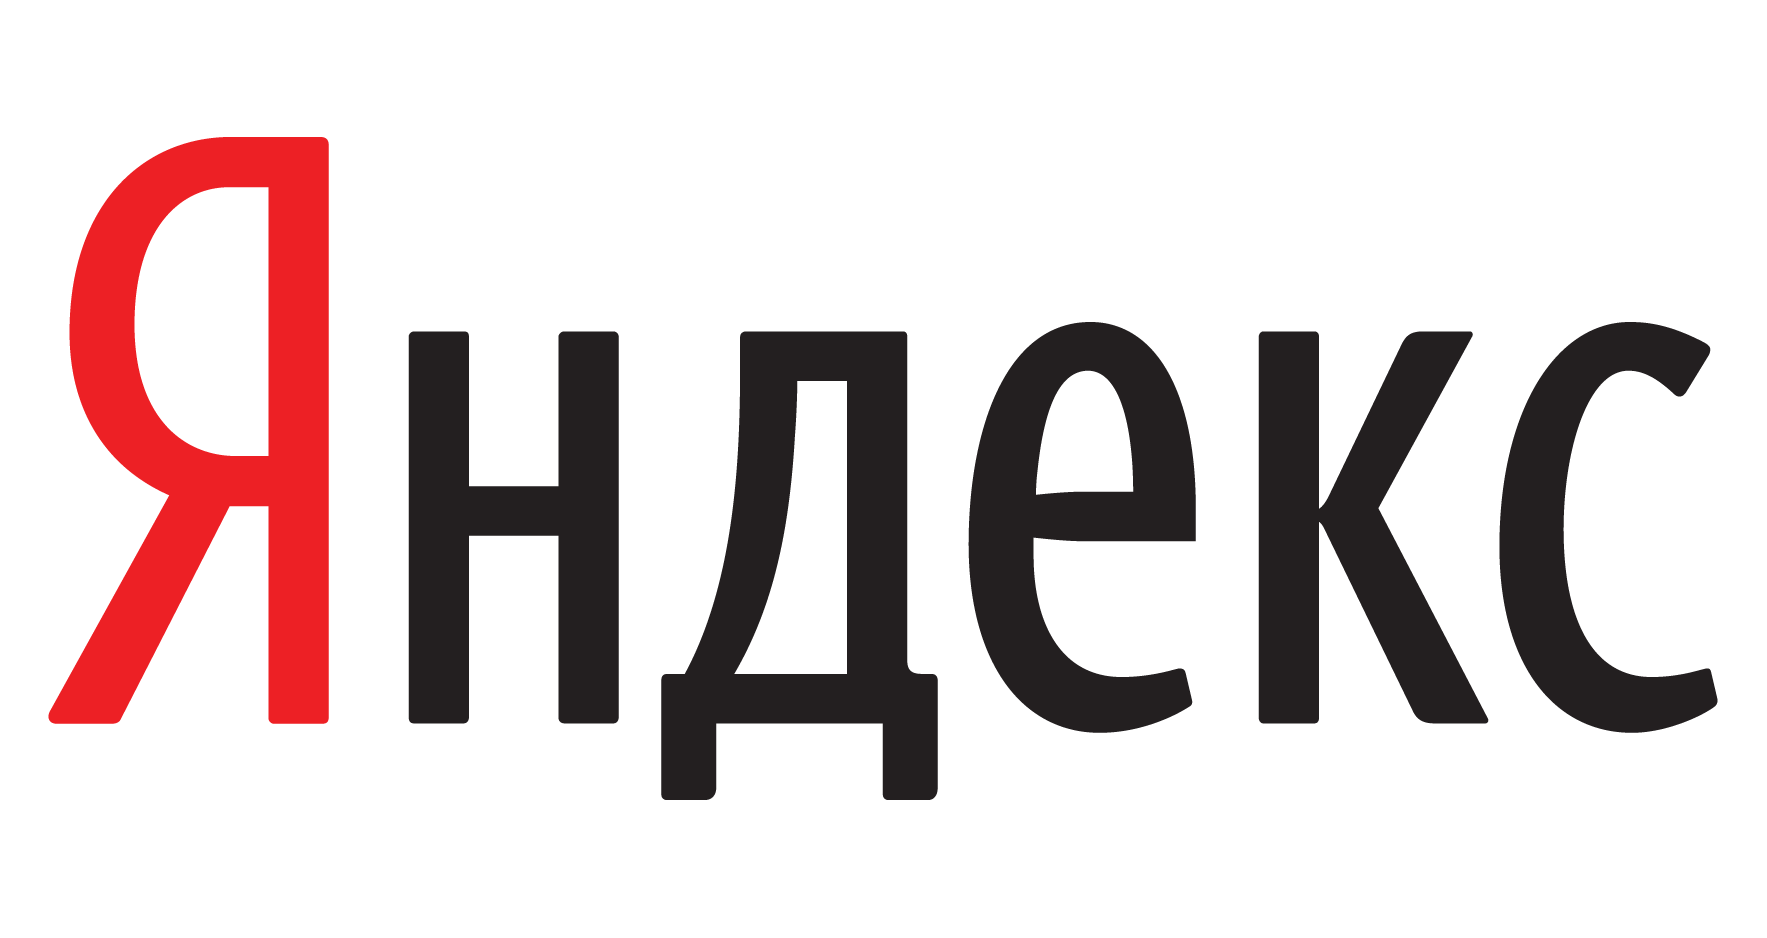 Издательство "Просвещение" и "Яндекс" создают свою образовательную платформу